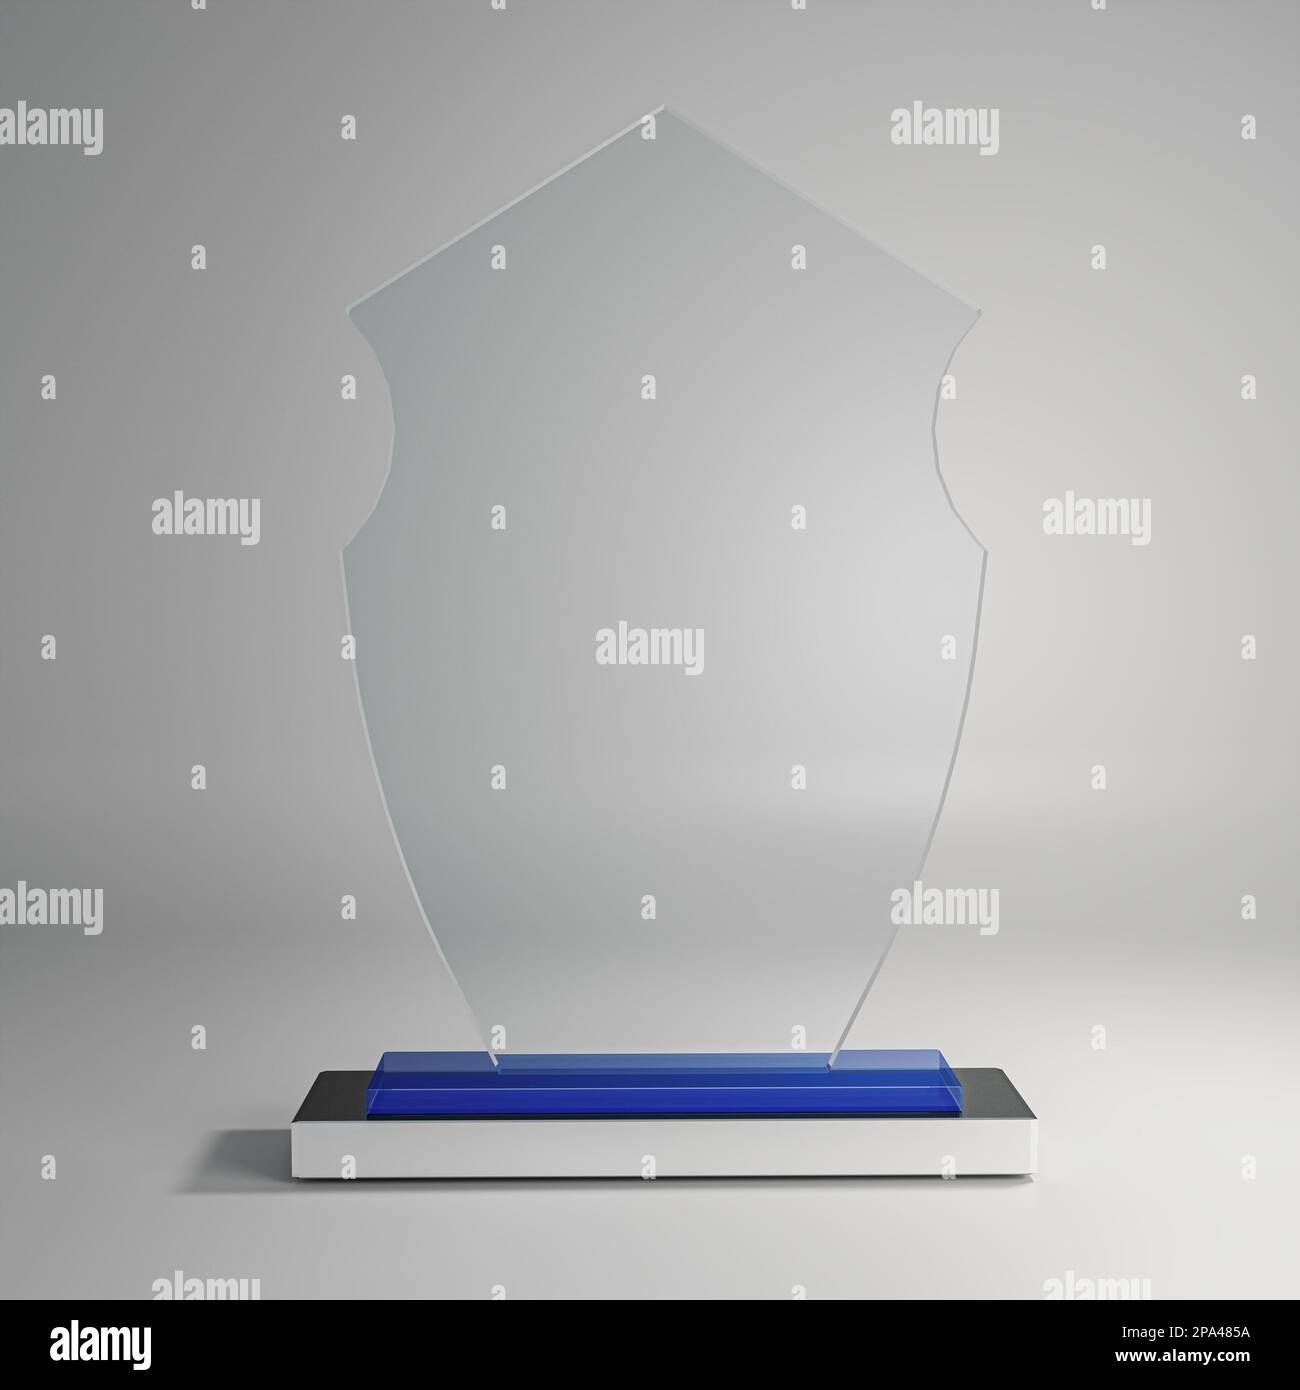 immagine priva di royalty per il modello crystal trophy 3d, immagine mockup per il premio crystal trophy 3d Foto Stock